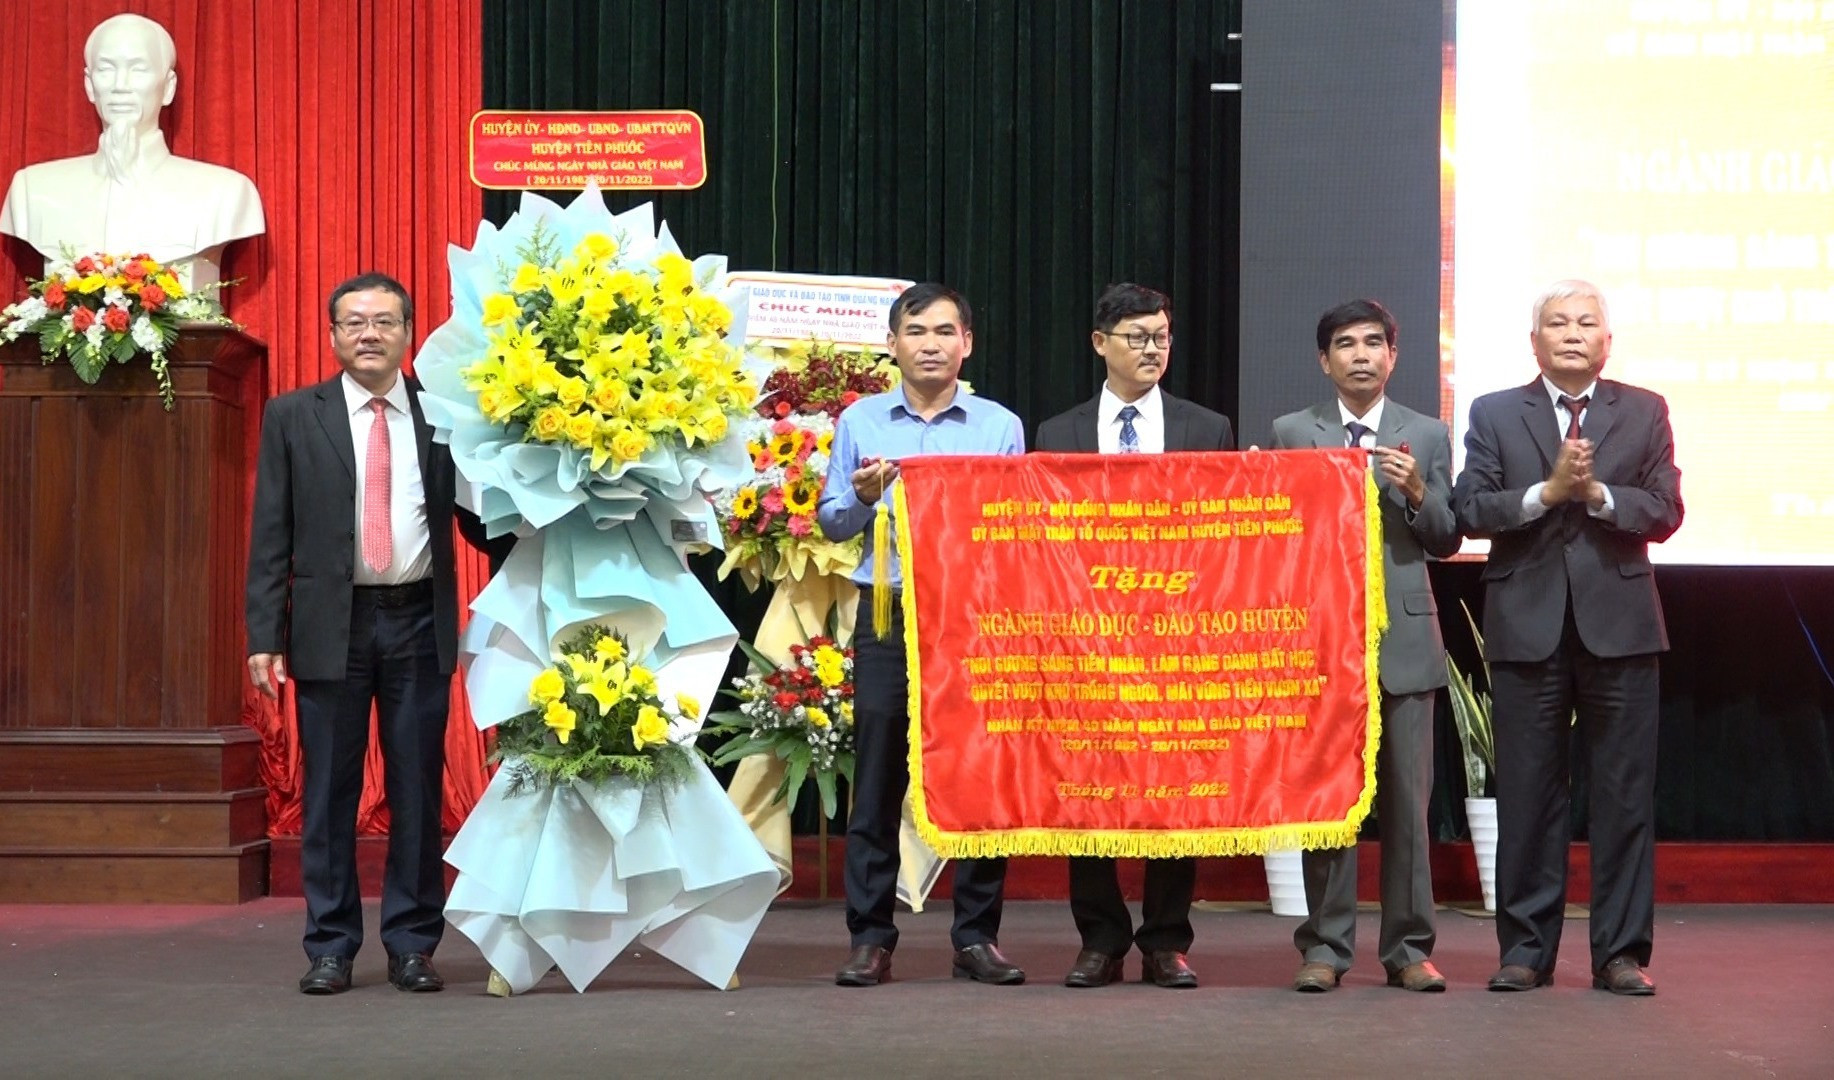 Lãnh đạo huyện Tiên Phước trao cờ thi đua của UBND tỉnh cho tập thể hoàn thành xuất sắc nhiệm vụ trong công tác giáo dục – đào tạo. Ảnh: P.HOÀNG